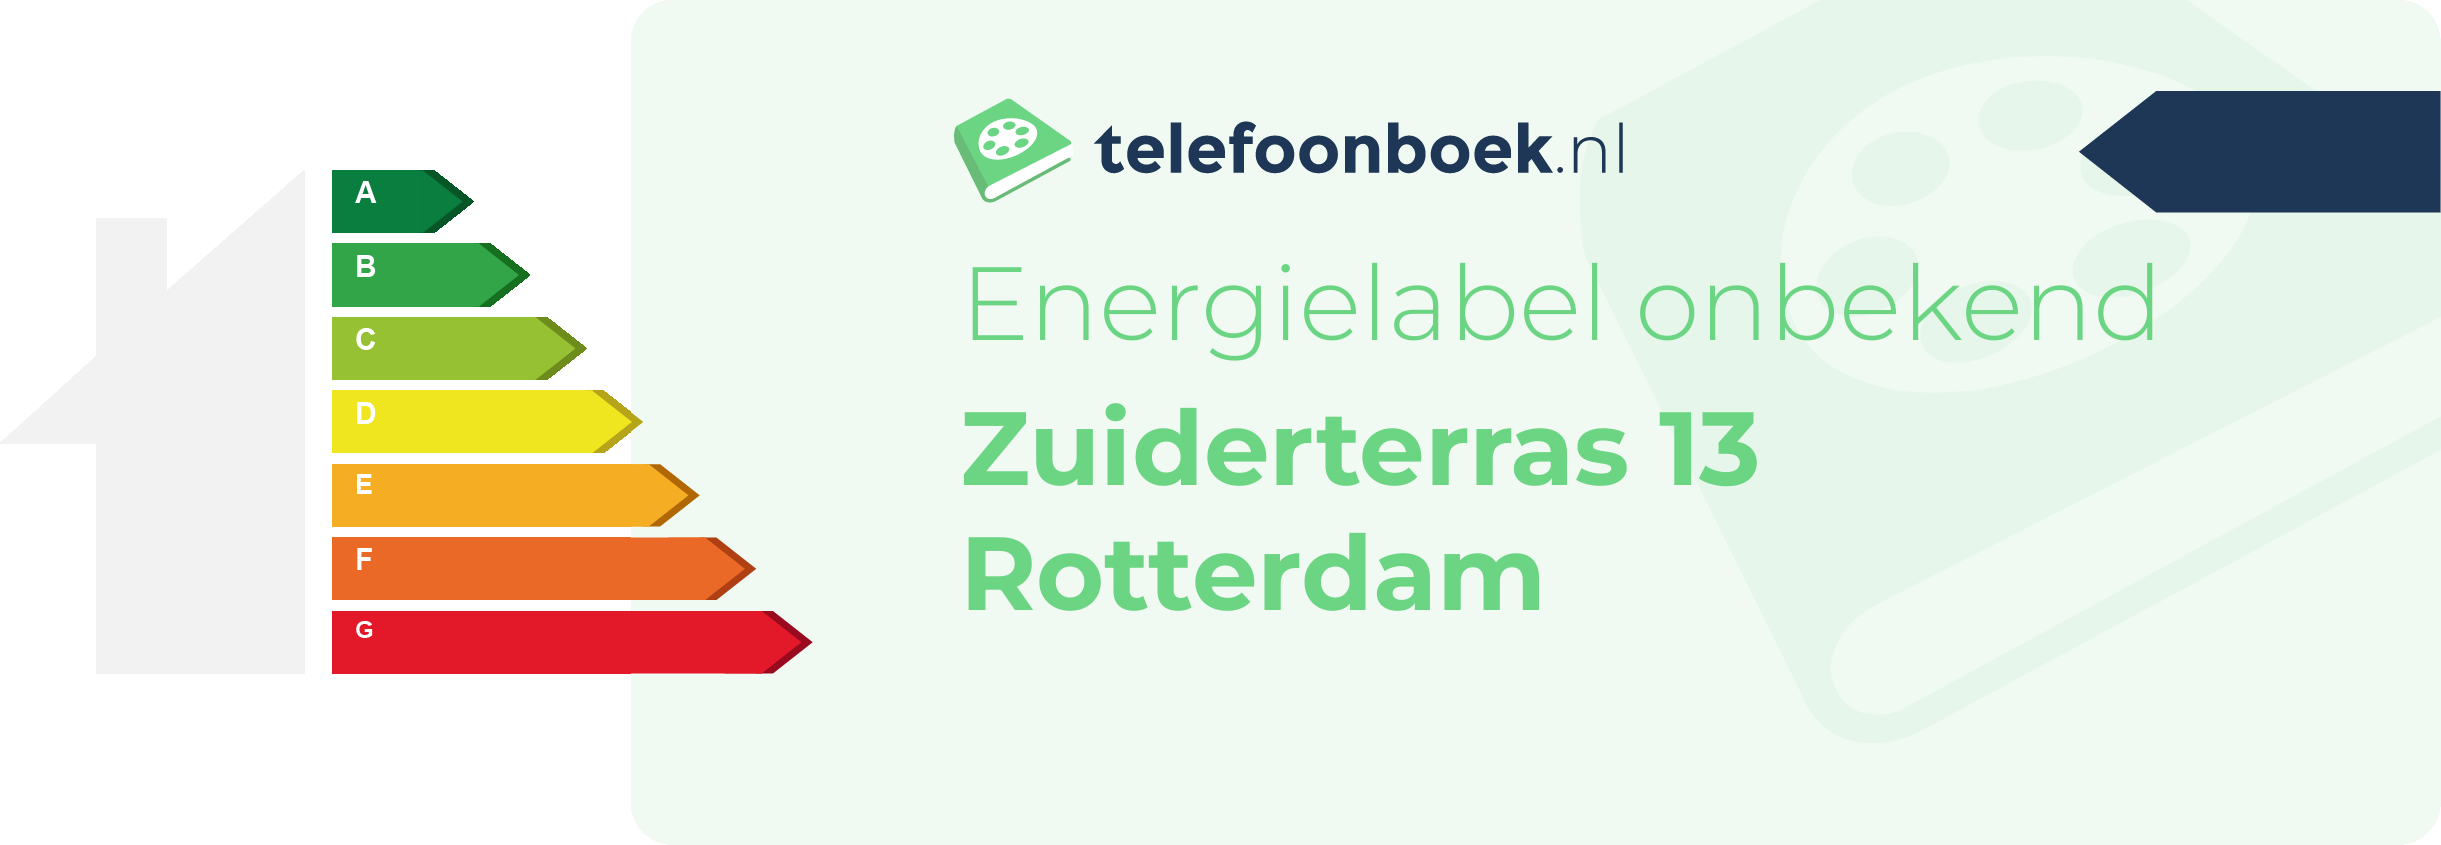 Energielabel Zuiderterras 13 Rotterdam